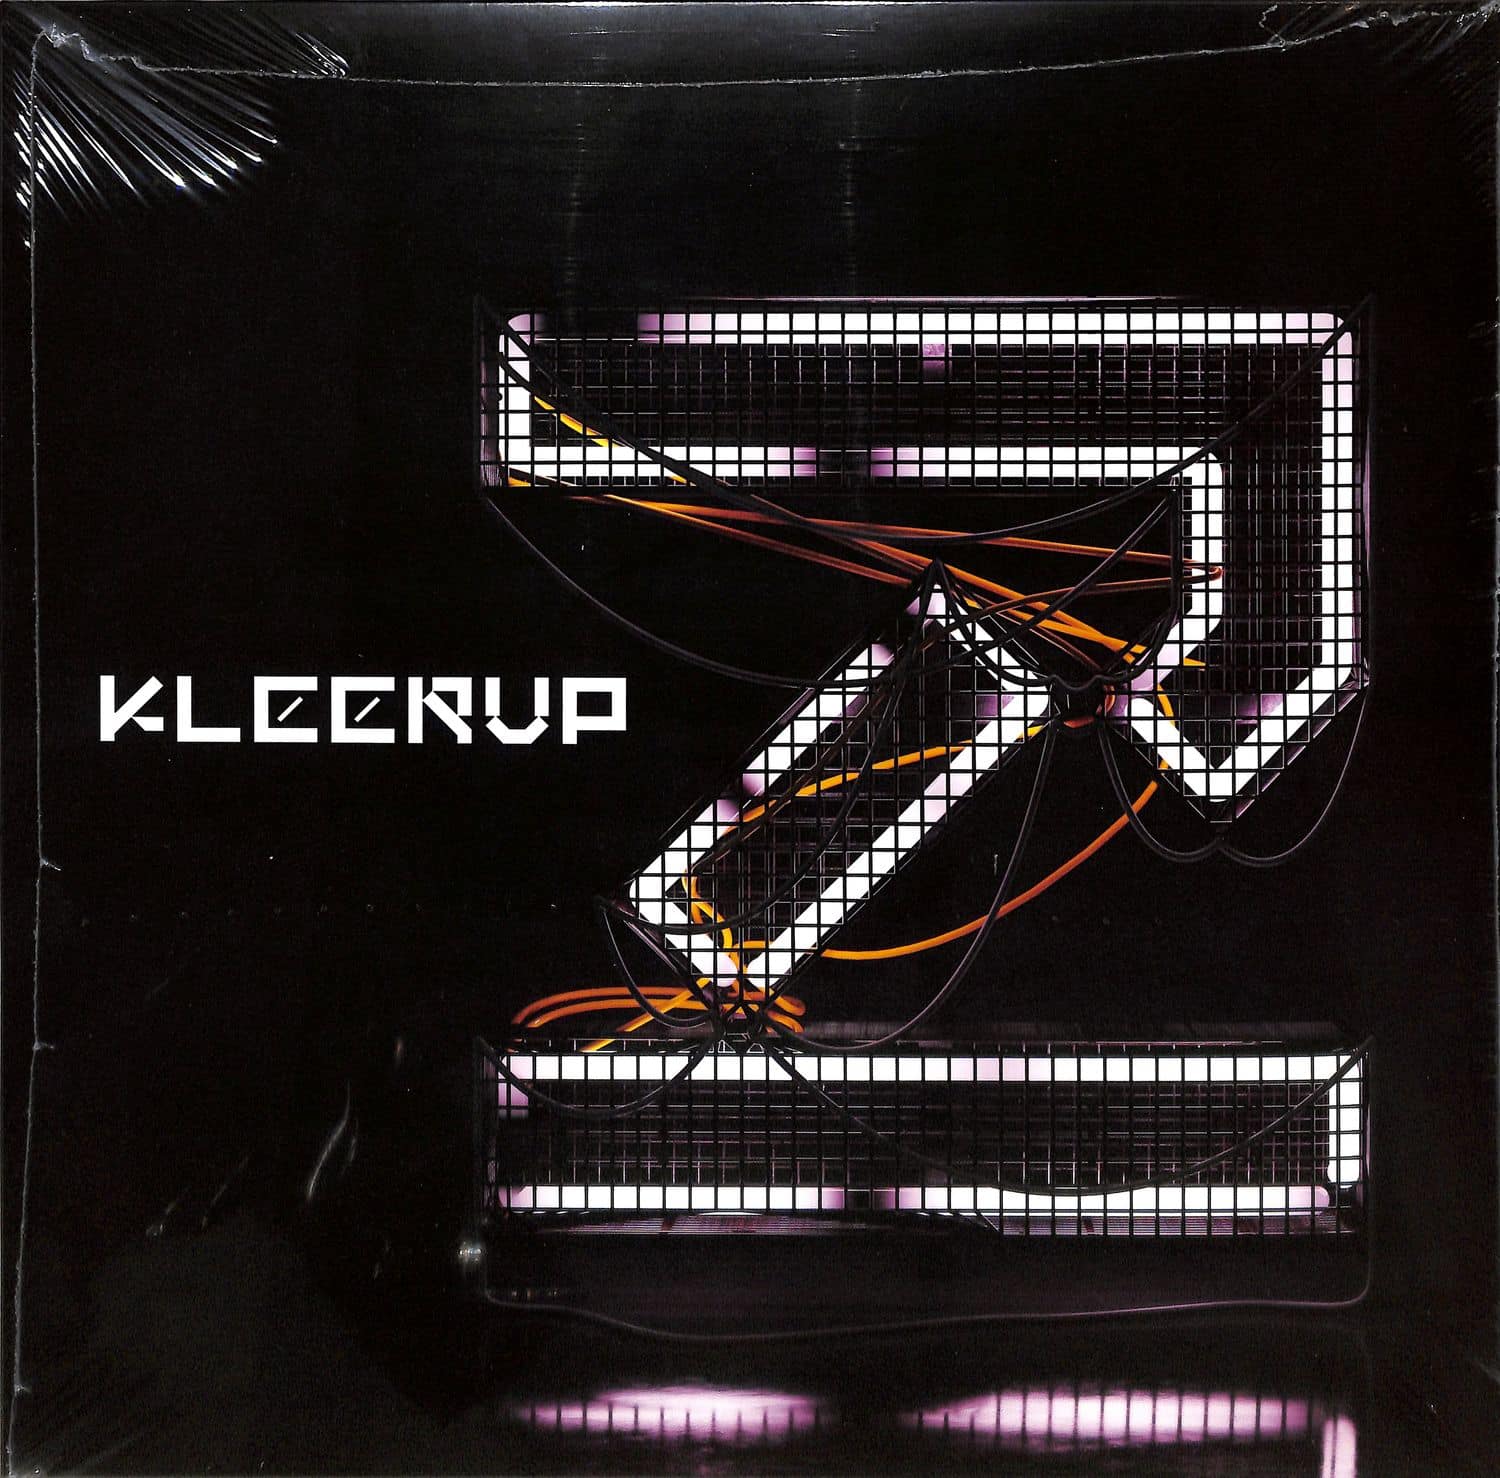 Kleerup - 2 